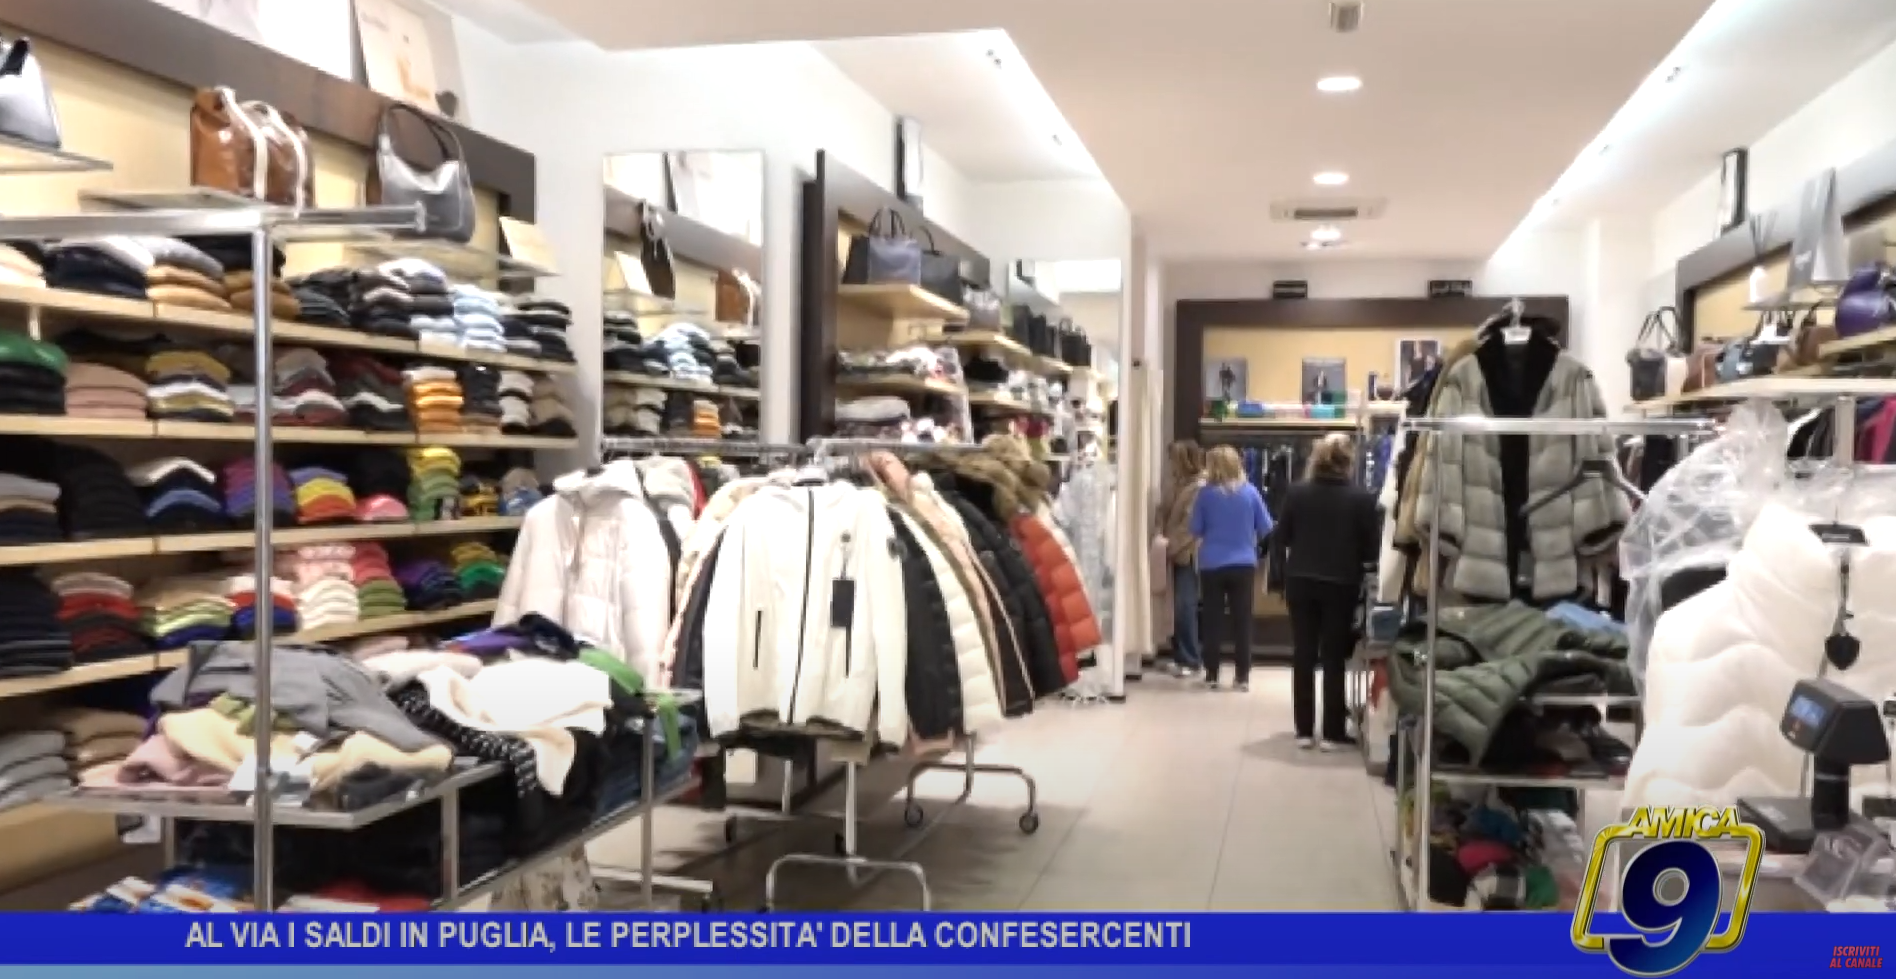 Al momento stai visualizzando Barletta NEWS24 – Al via i saldi in Puglia, le perplessità della Confesercenti